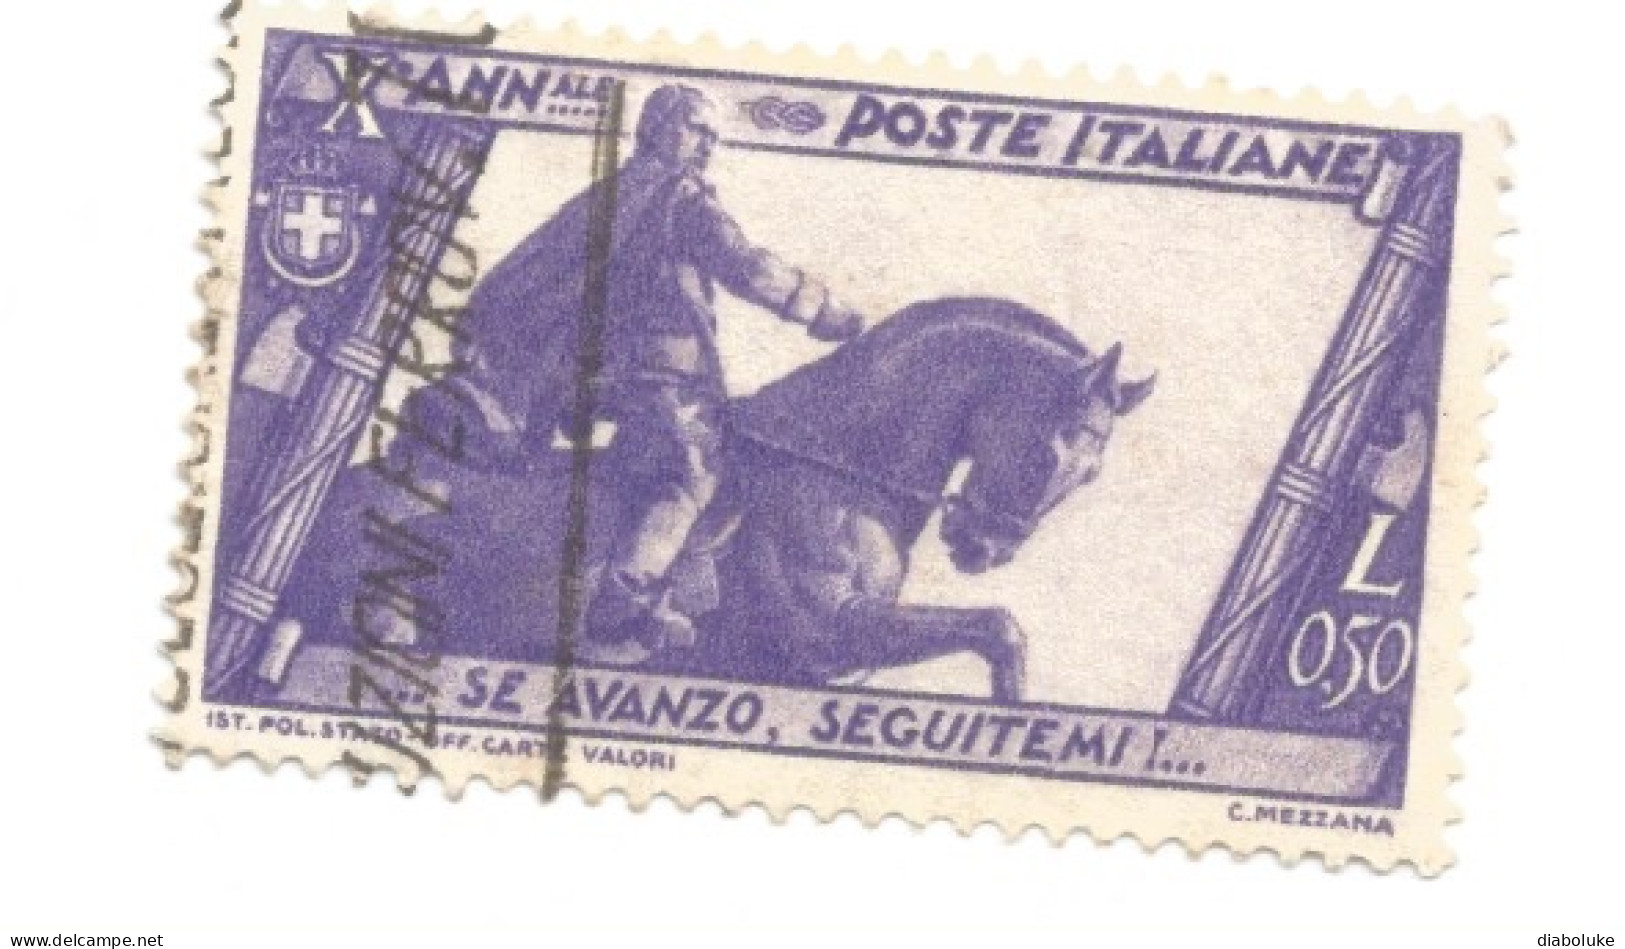 (REGNO D'ITALIA), 1932, MARCIA SU ROMA - Serietta di 9 francobolli usati